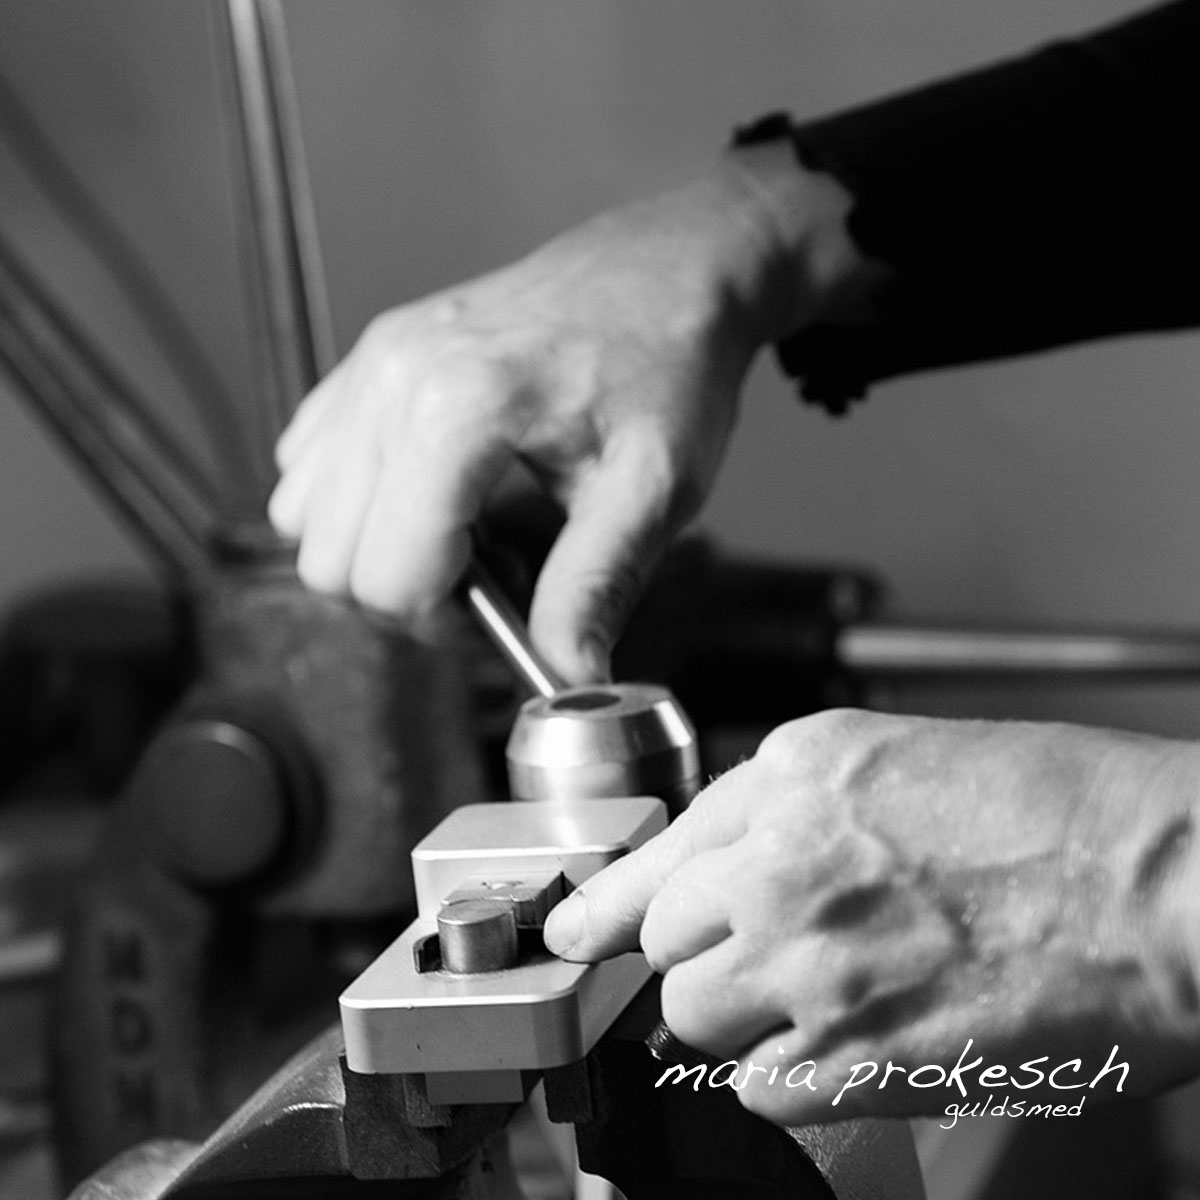 Guldsmed Maria arbejder i værkstedet med smykker og vielsesringe. Alle håndlavede. Det giver stor tilfredshed og mange muligheder for personlige valg.